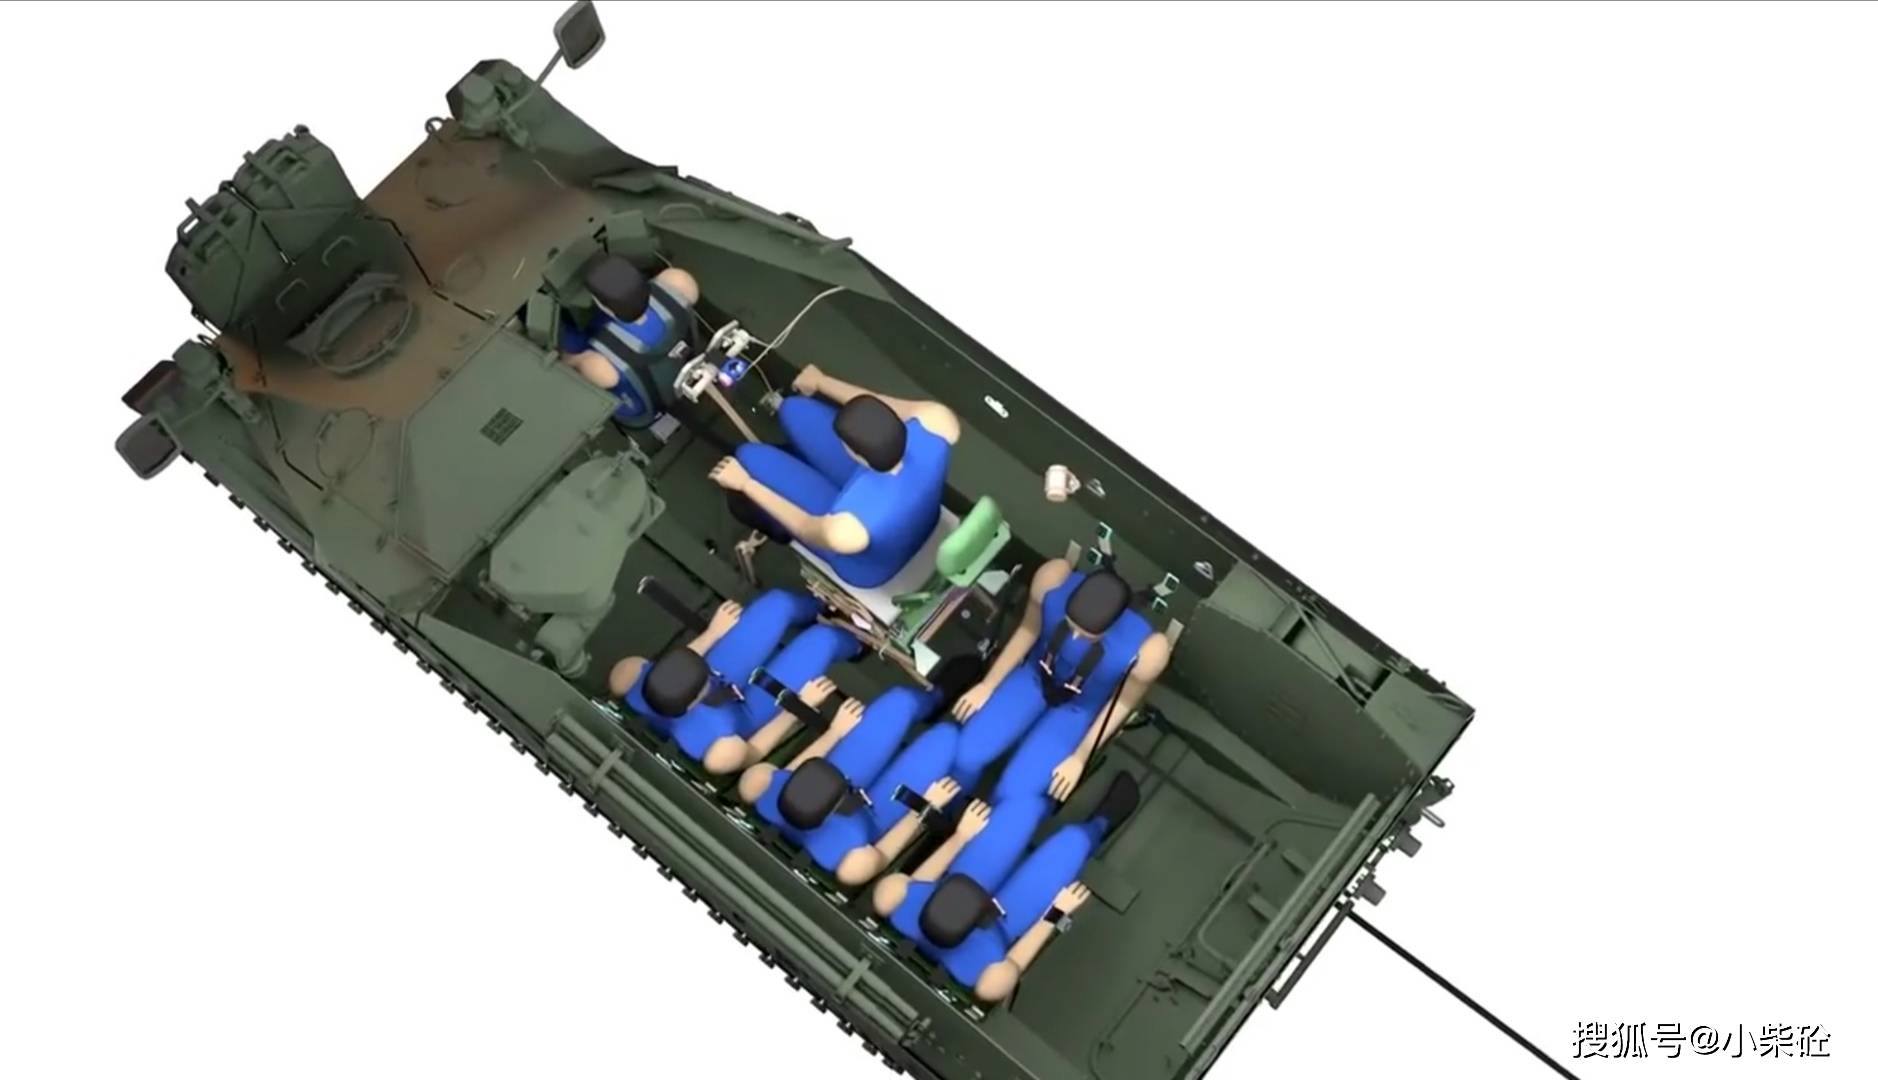 装甲运兵车型能搭载四名士兵(前面是驾驶员和车长),而且内部并不拥挤